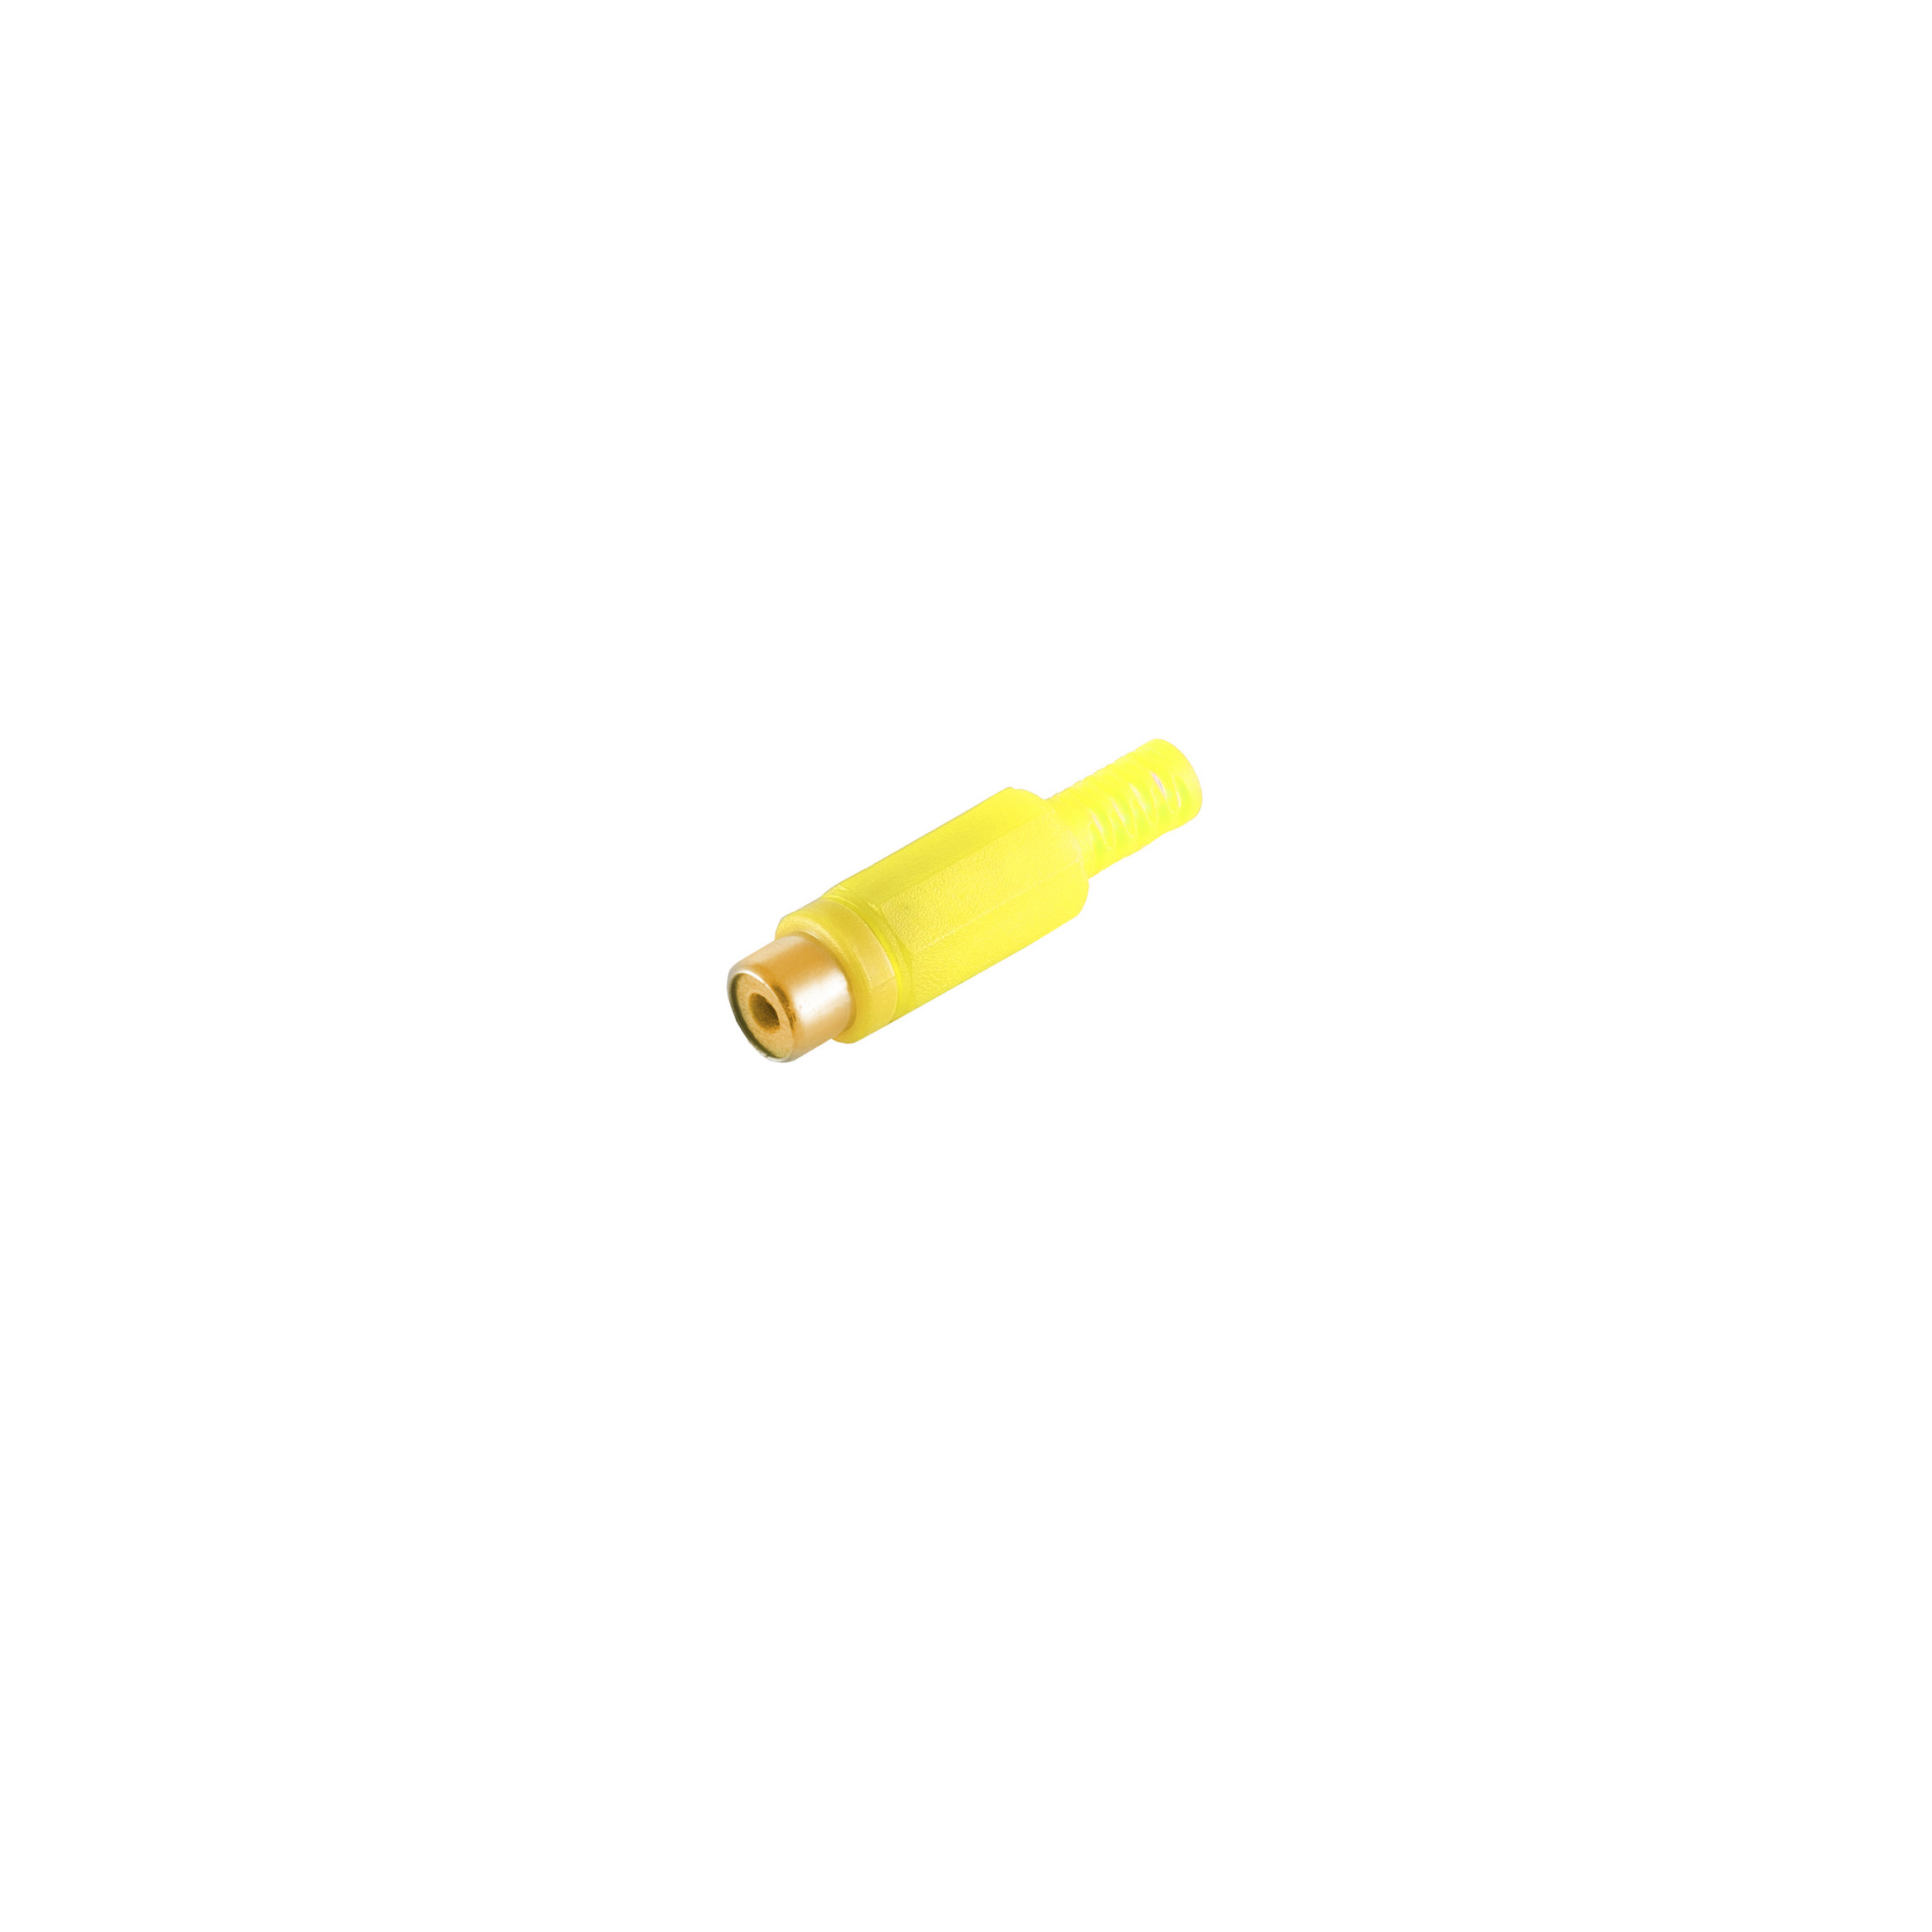 MAXIMUM Cinch Kontakte S/CONN CONNECTIVITY Cinchkupplung, vergoldet gelb,